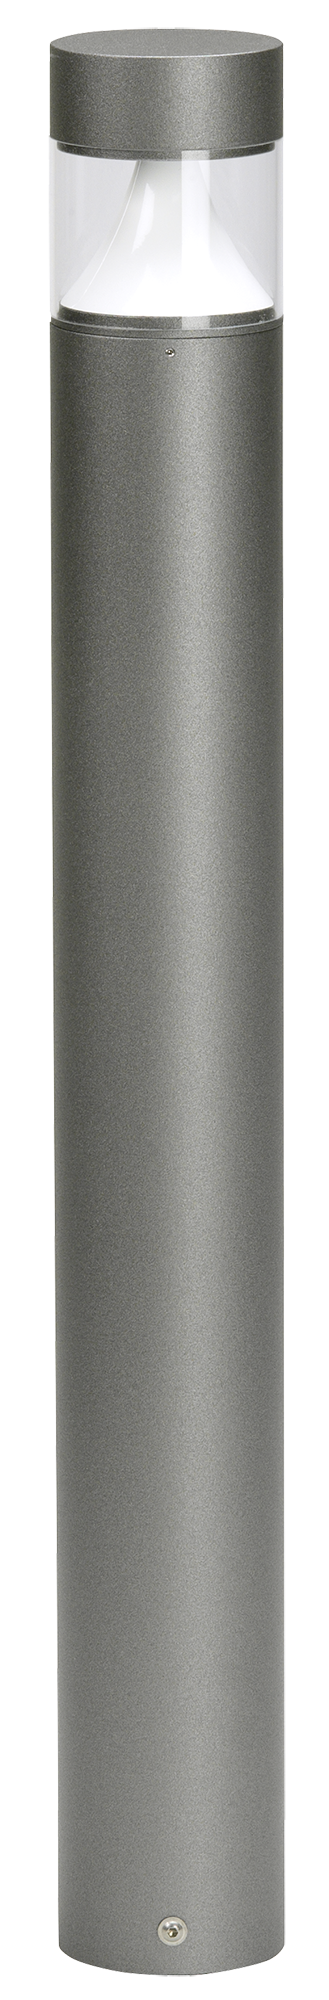 Bodenleuchten, Pollerleuchten, Kandelaber & Bodenlampen für außen von Albert Leuchten Pollerleuchte Typ Nr. 2295 622295